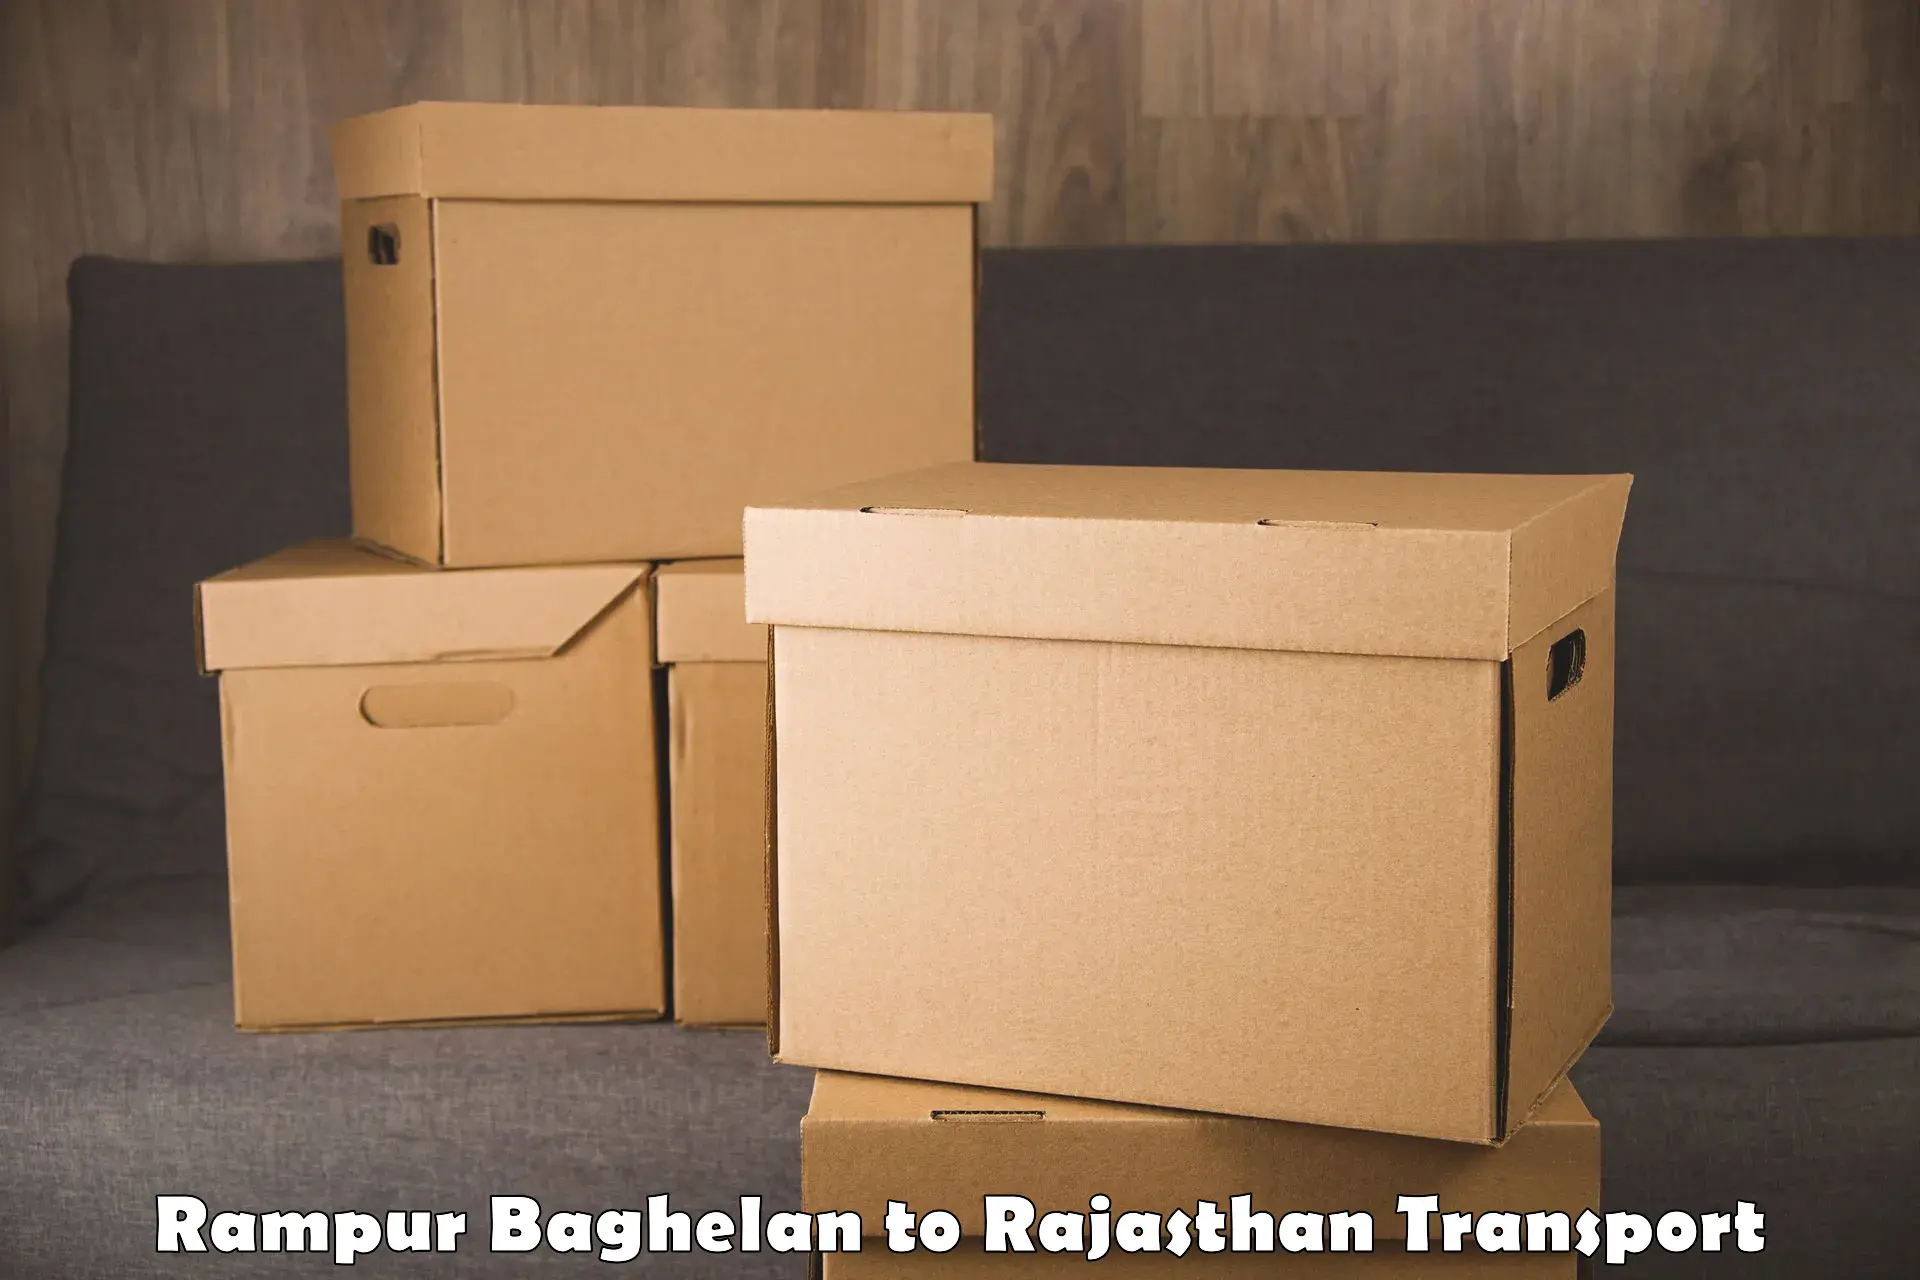 Bike transport service Rampur Baghelan to IIT Jodhpur